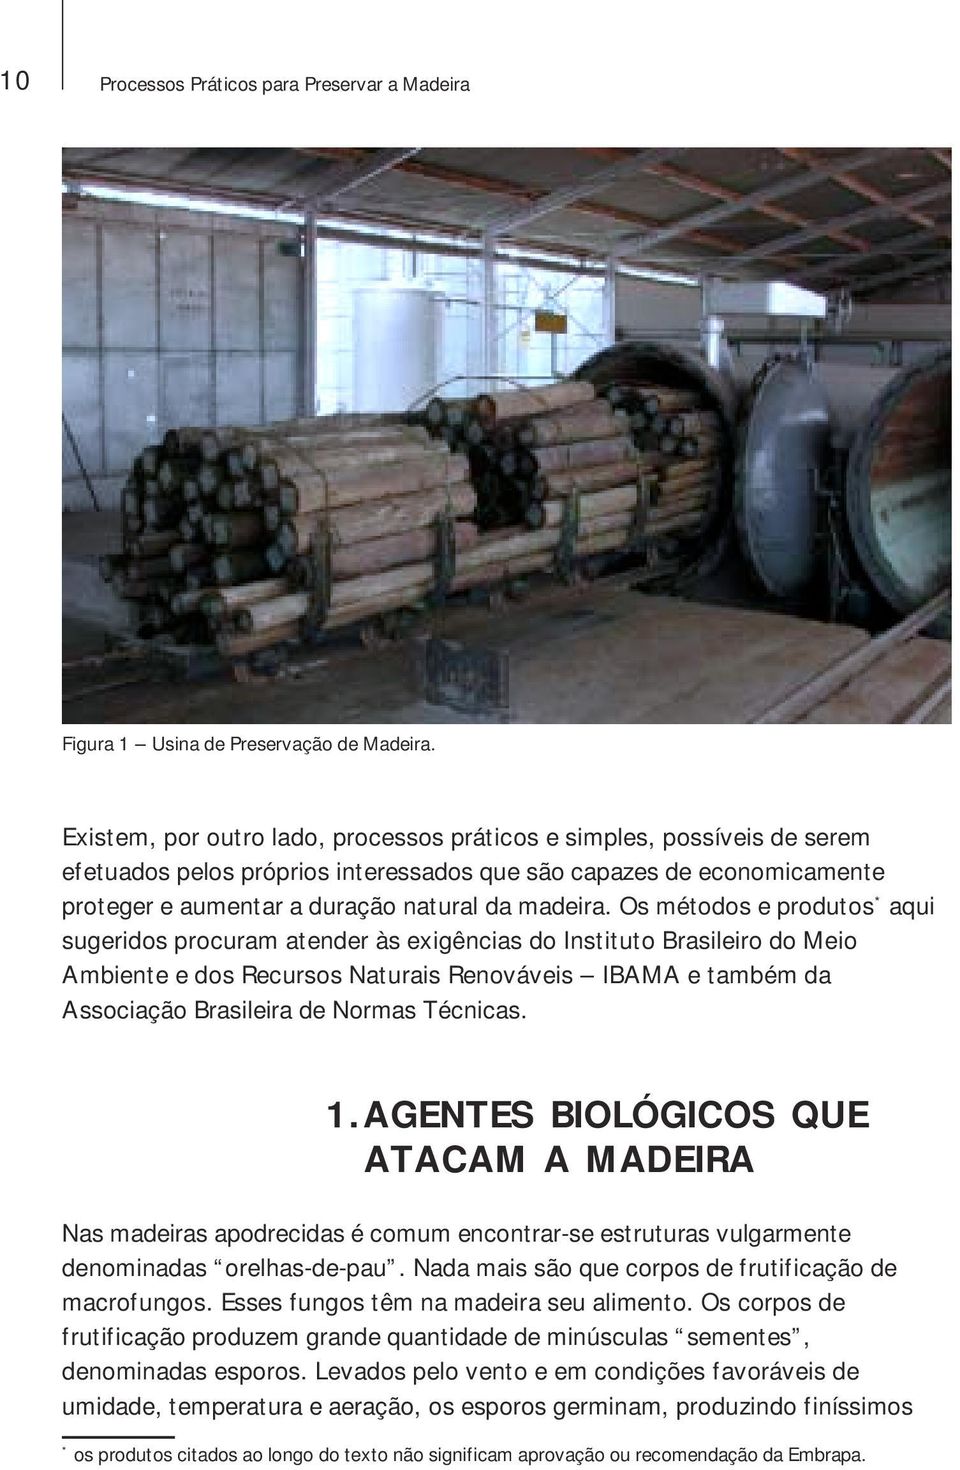 Os métodos e produtos * aqui sugeridos procuram atender às exigências do Instituto Brasileiro do Meio Ambiente e dos Recursos Naturais Renováveis IBAMA e também da Associação Brasileira de Normas